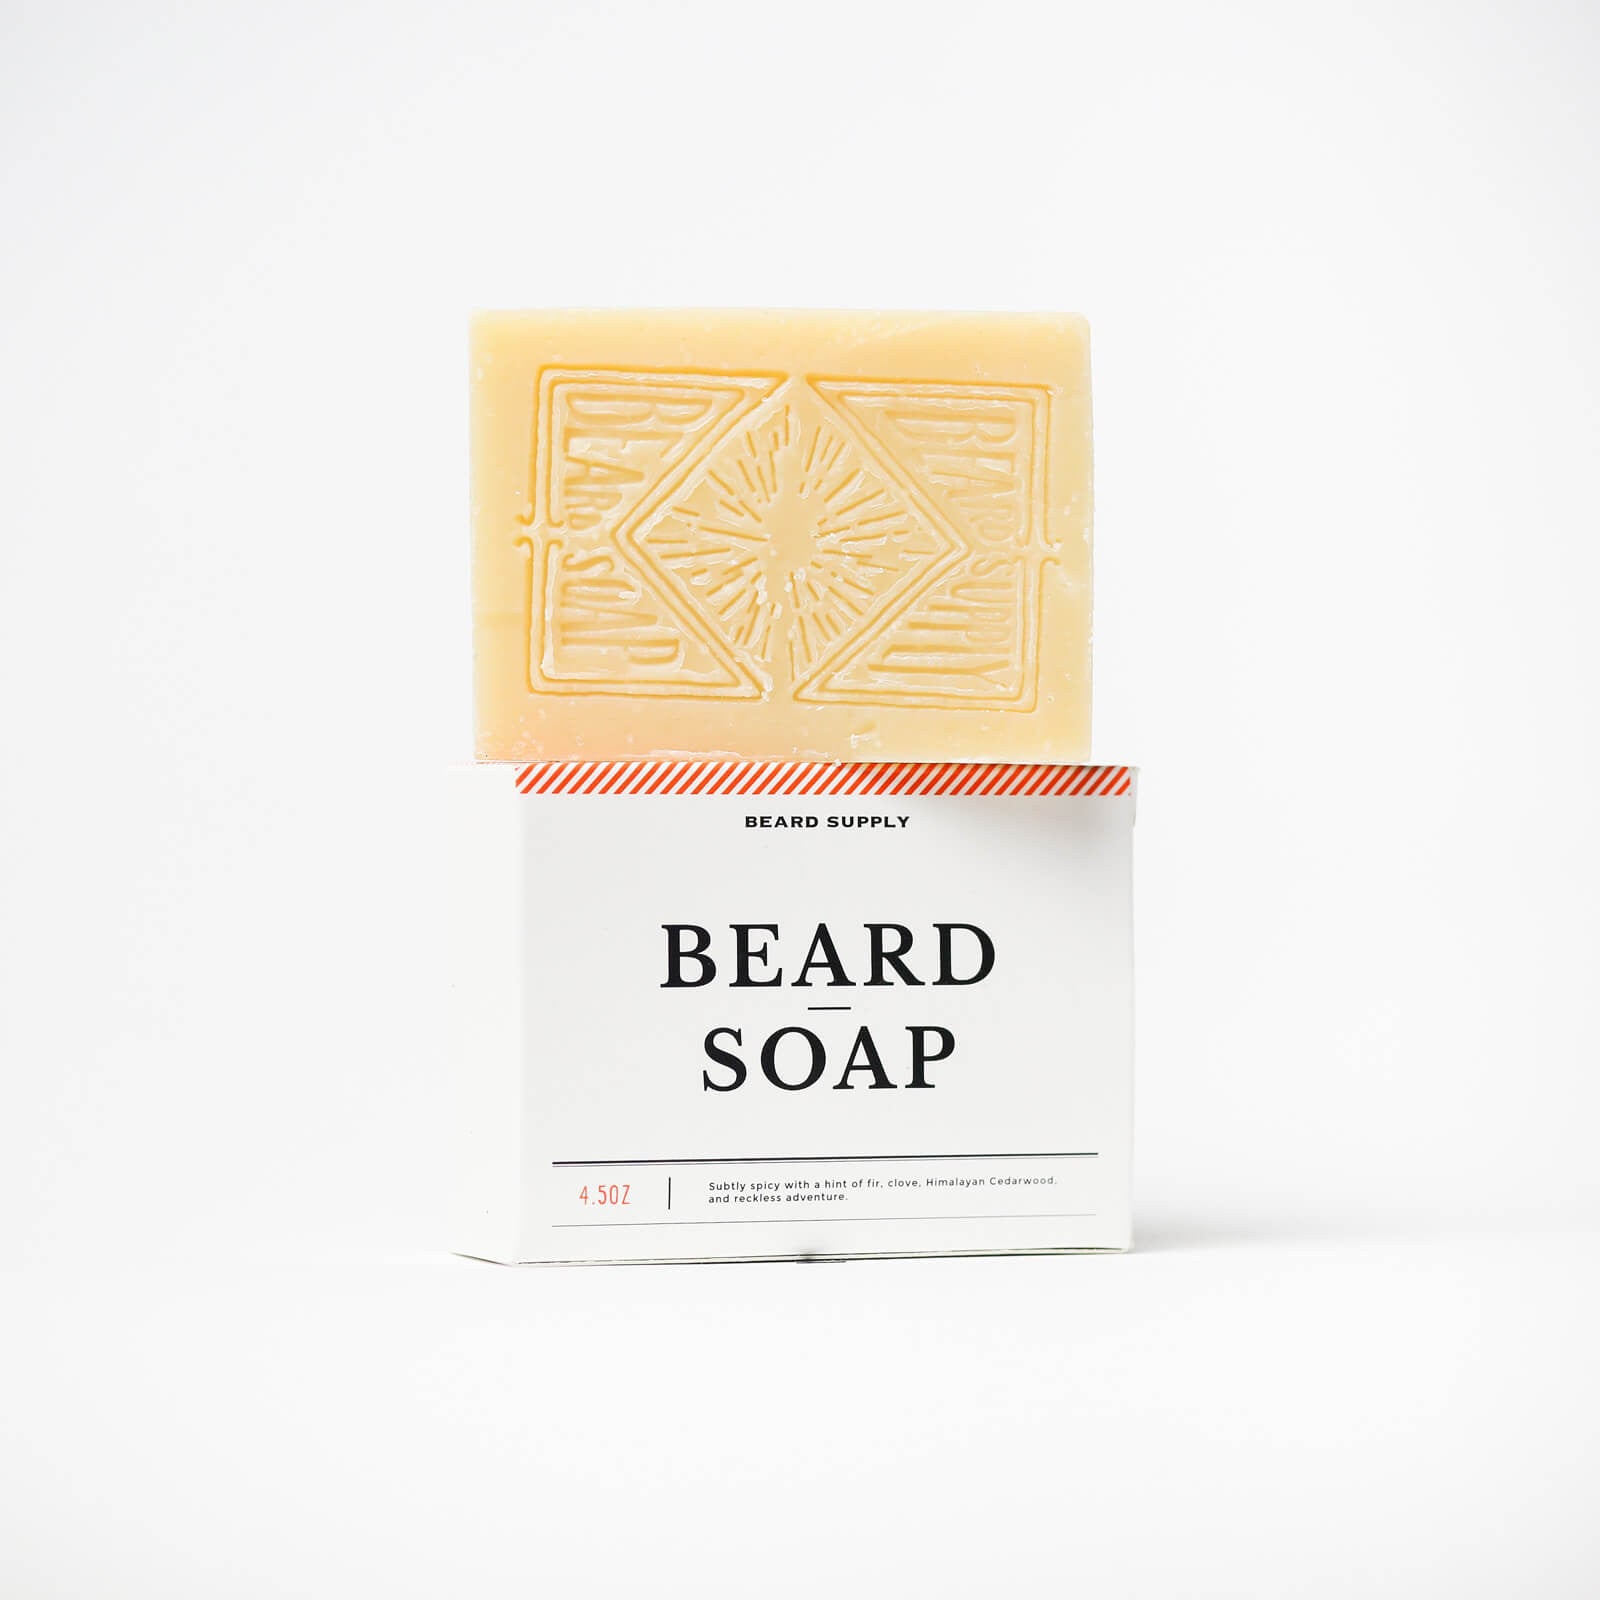 Beard Soap